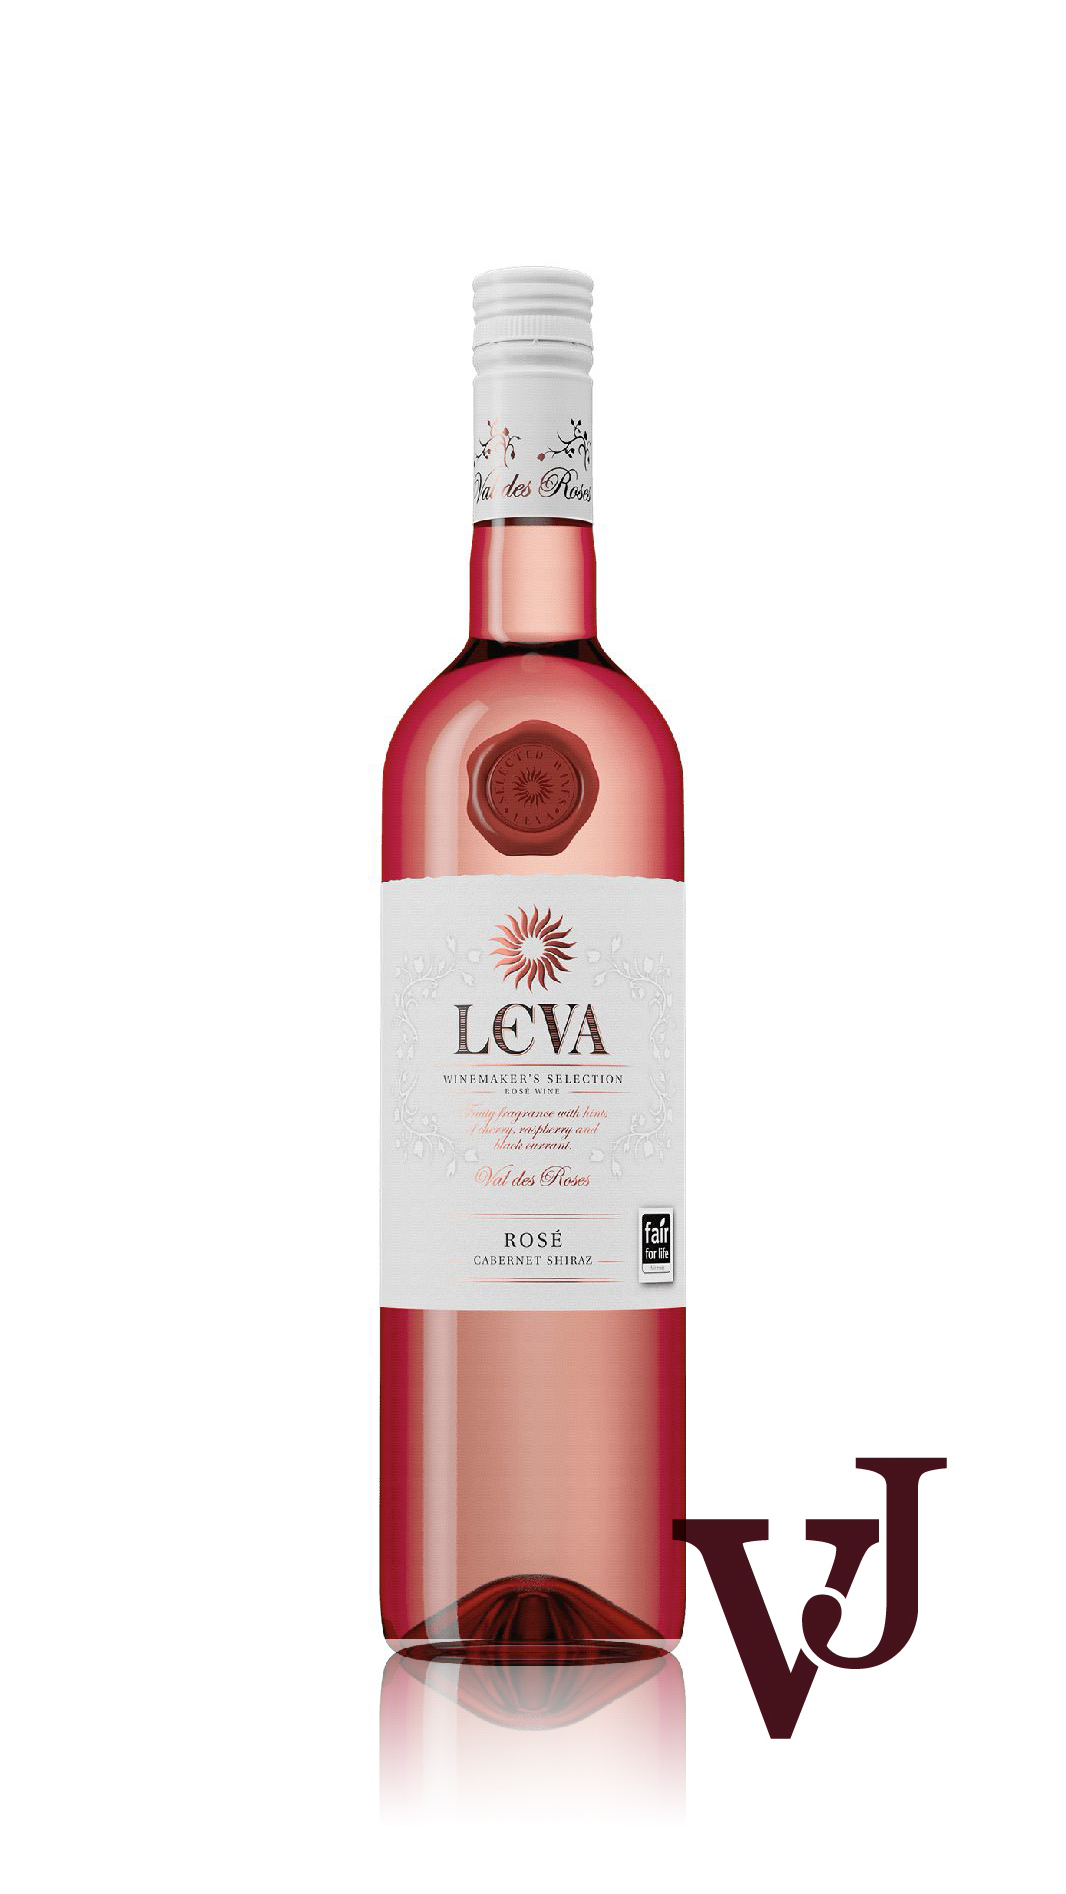 Rosé Vin - Leva Cabernet Shiraz Rosé artikel nummer 266001 från producenten Sortoizpitvane Sungurlare från området Bulgarien